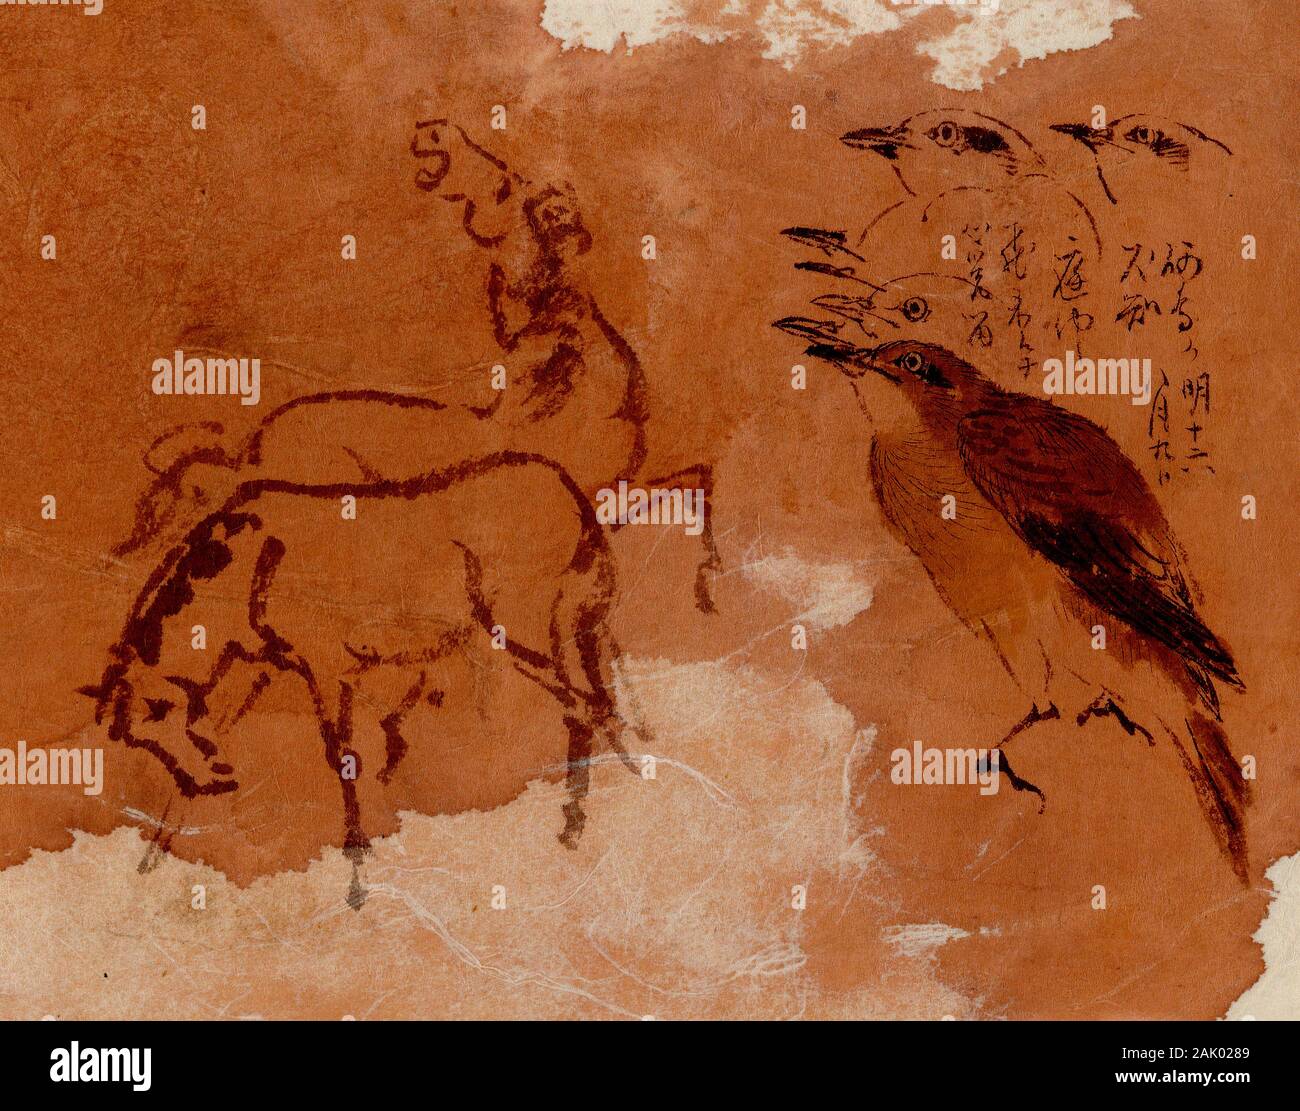 Peintures anciennes à l'encre chinoise remixées d'un cheval, d'oiseaux et de calligraphie. Banque D'Images